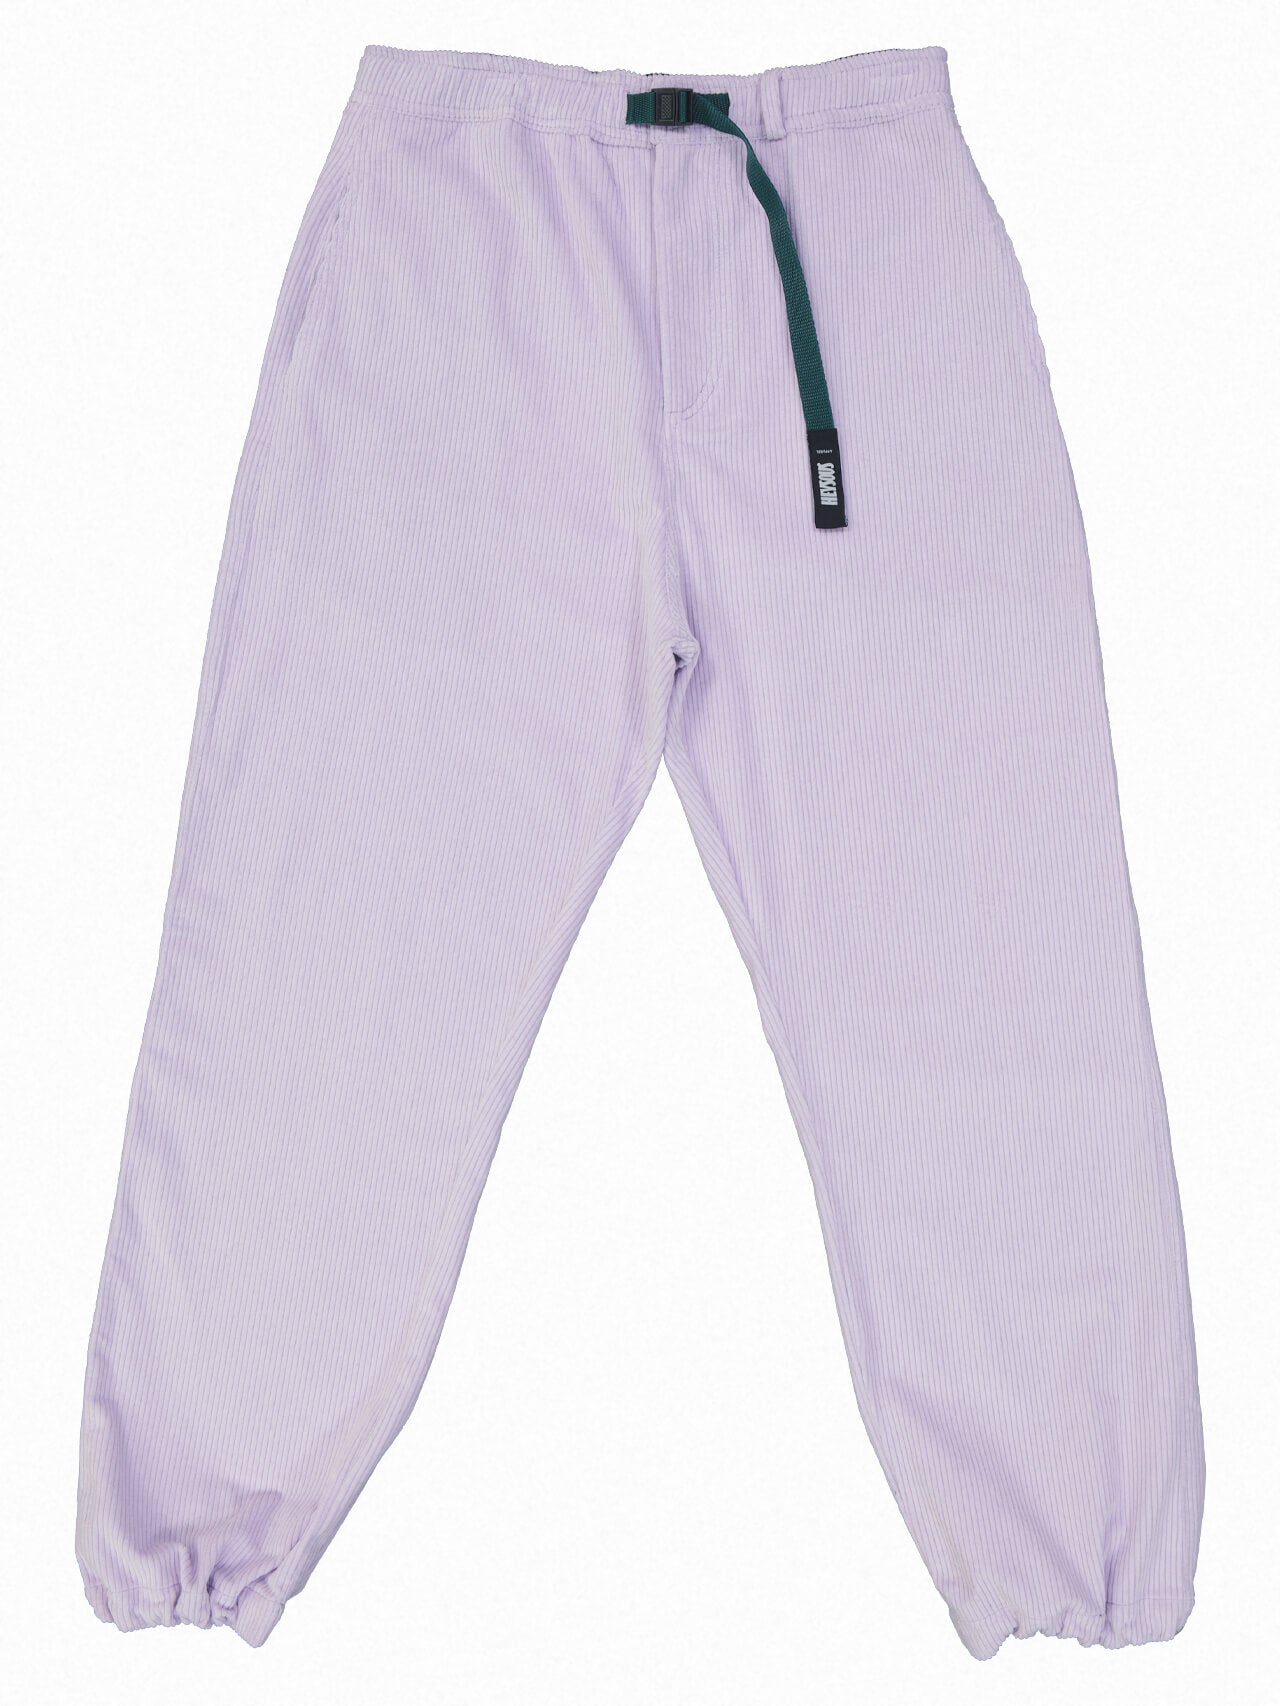 purple corduroy pants repop of purple corduroy... - Depop